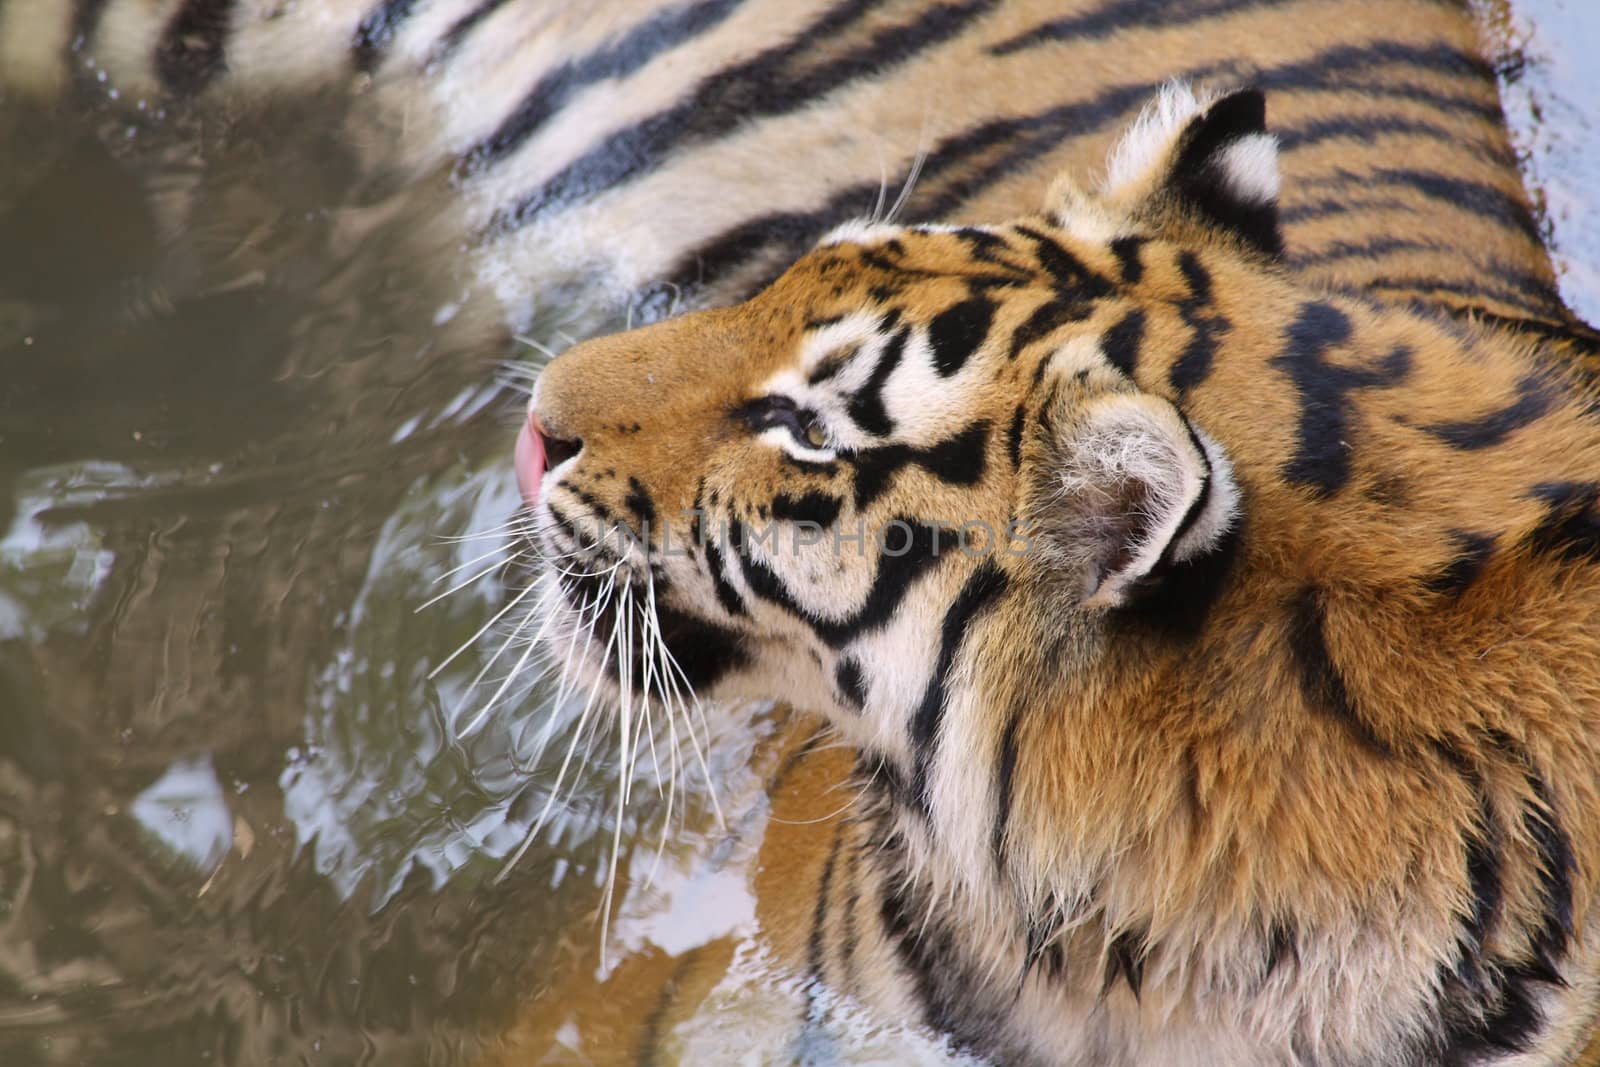 Tiger by Lessadar